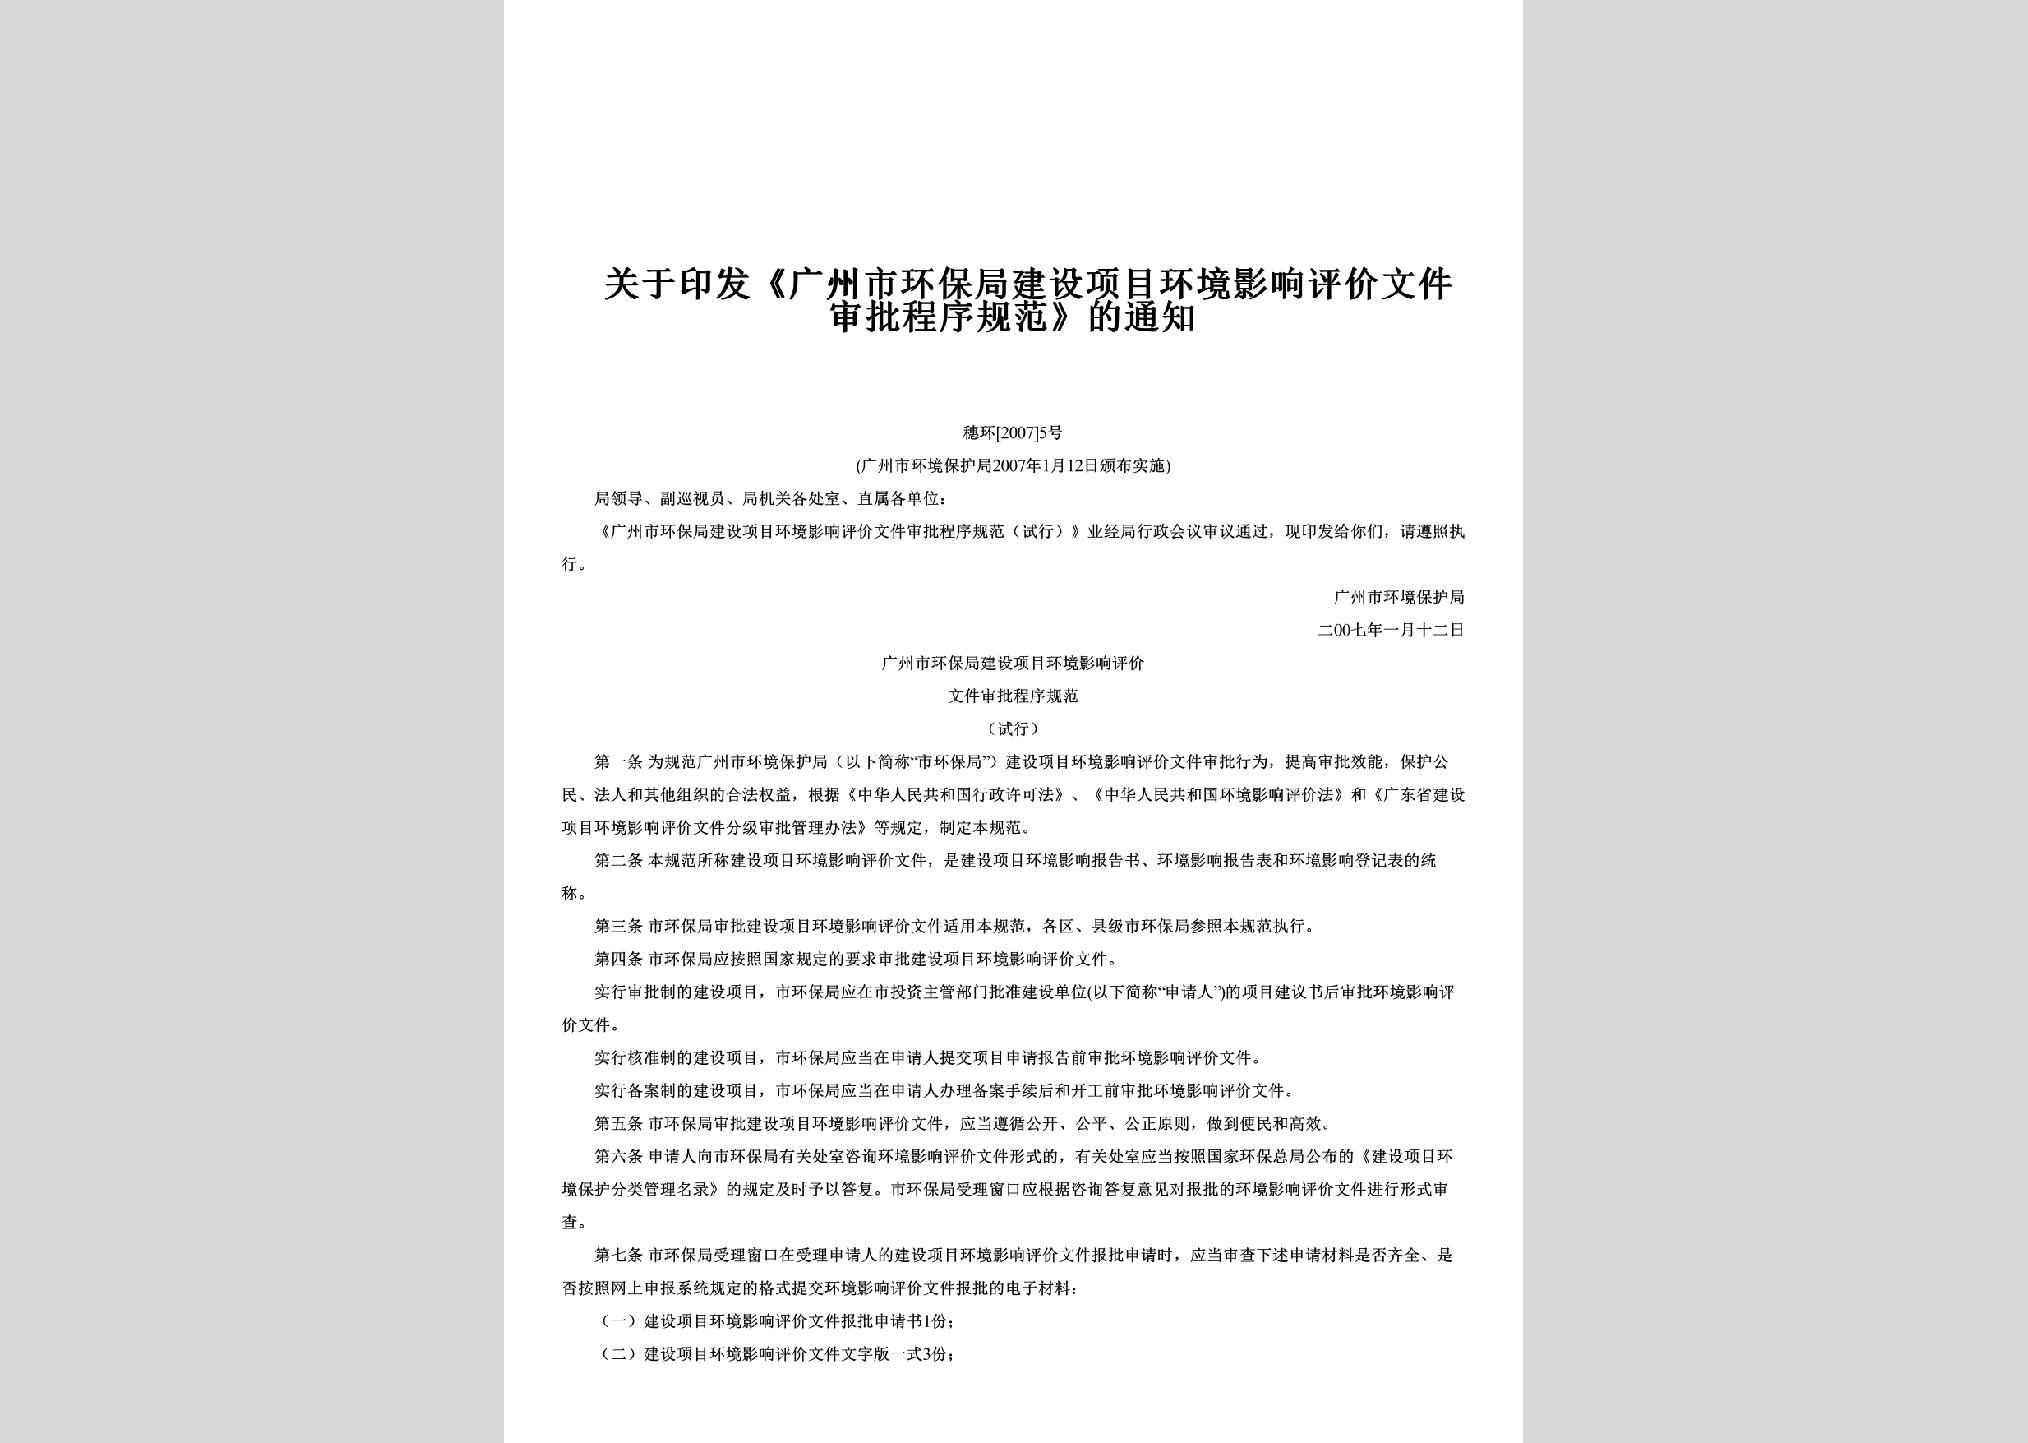 穗环[2007]5号：关于印发《广州市环保局建设项目环境影响评价文件审批程序规范》的通知